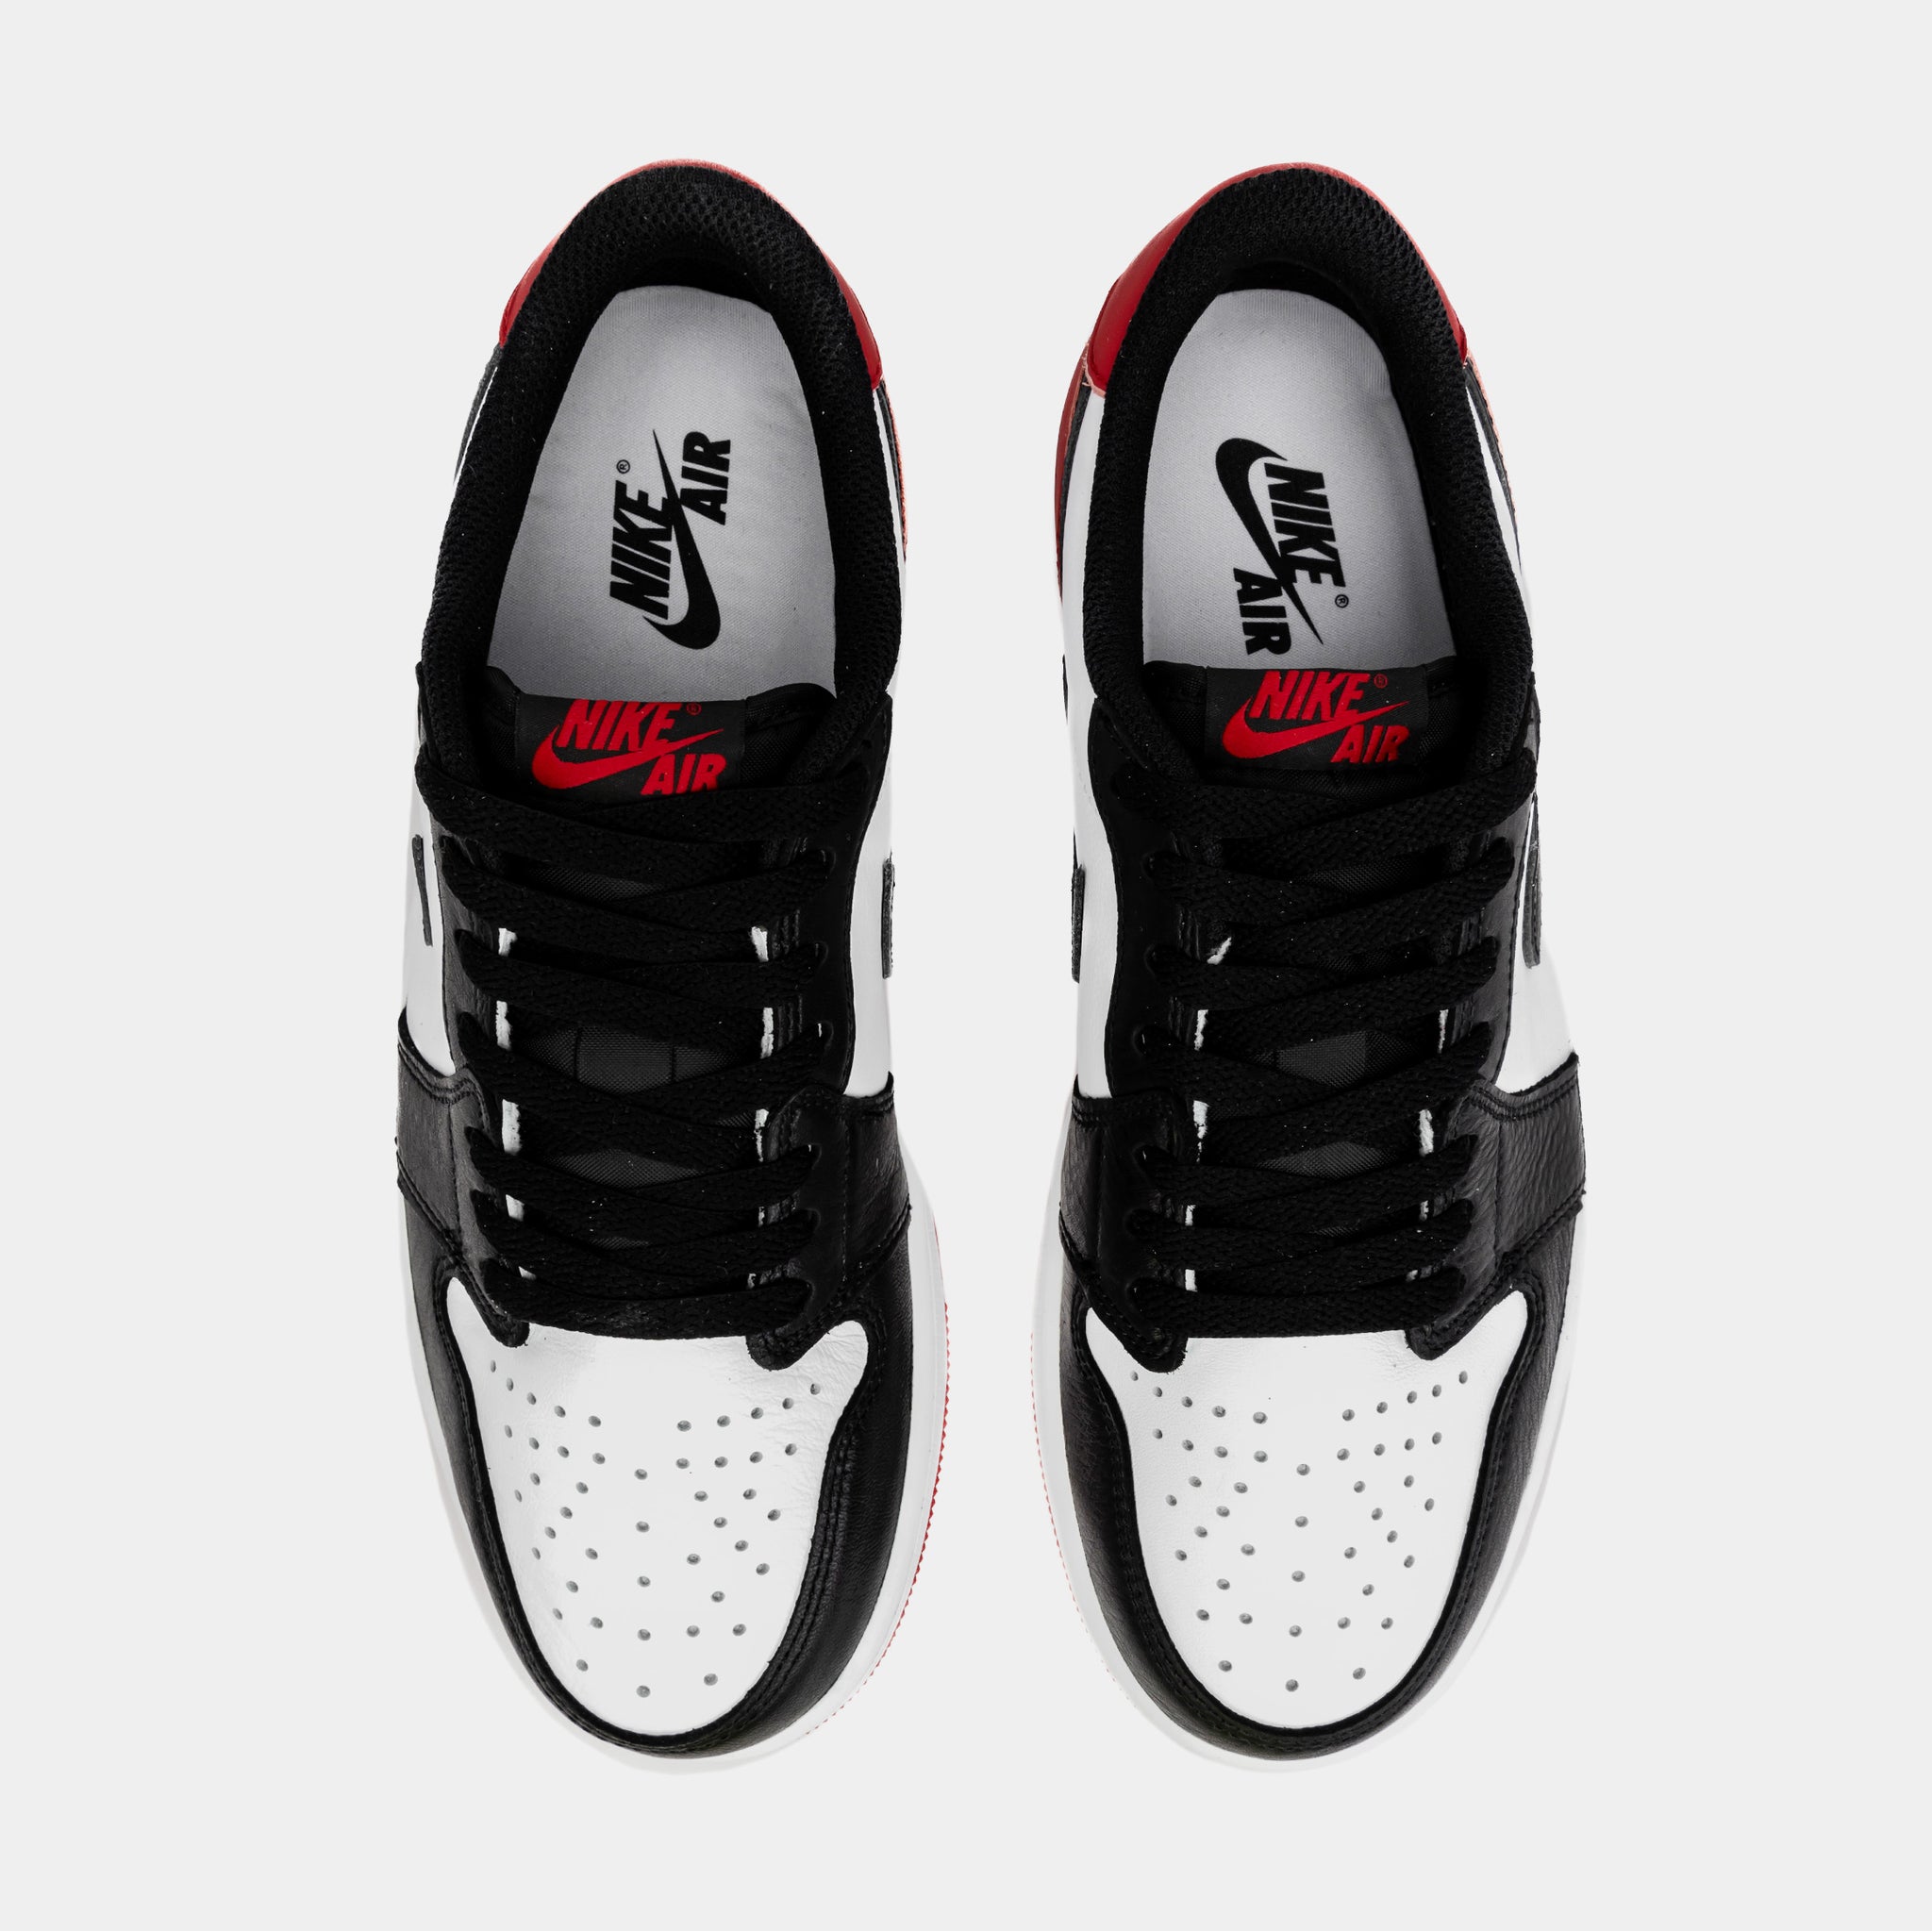 Jordan Air Jordan 1 Retro Low OG Black Toe Mens Lifestyle Shoes